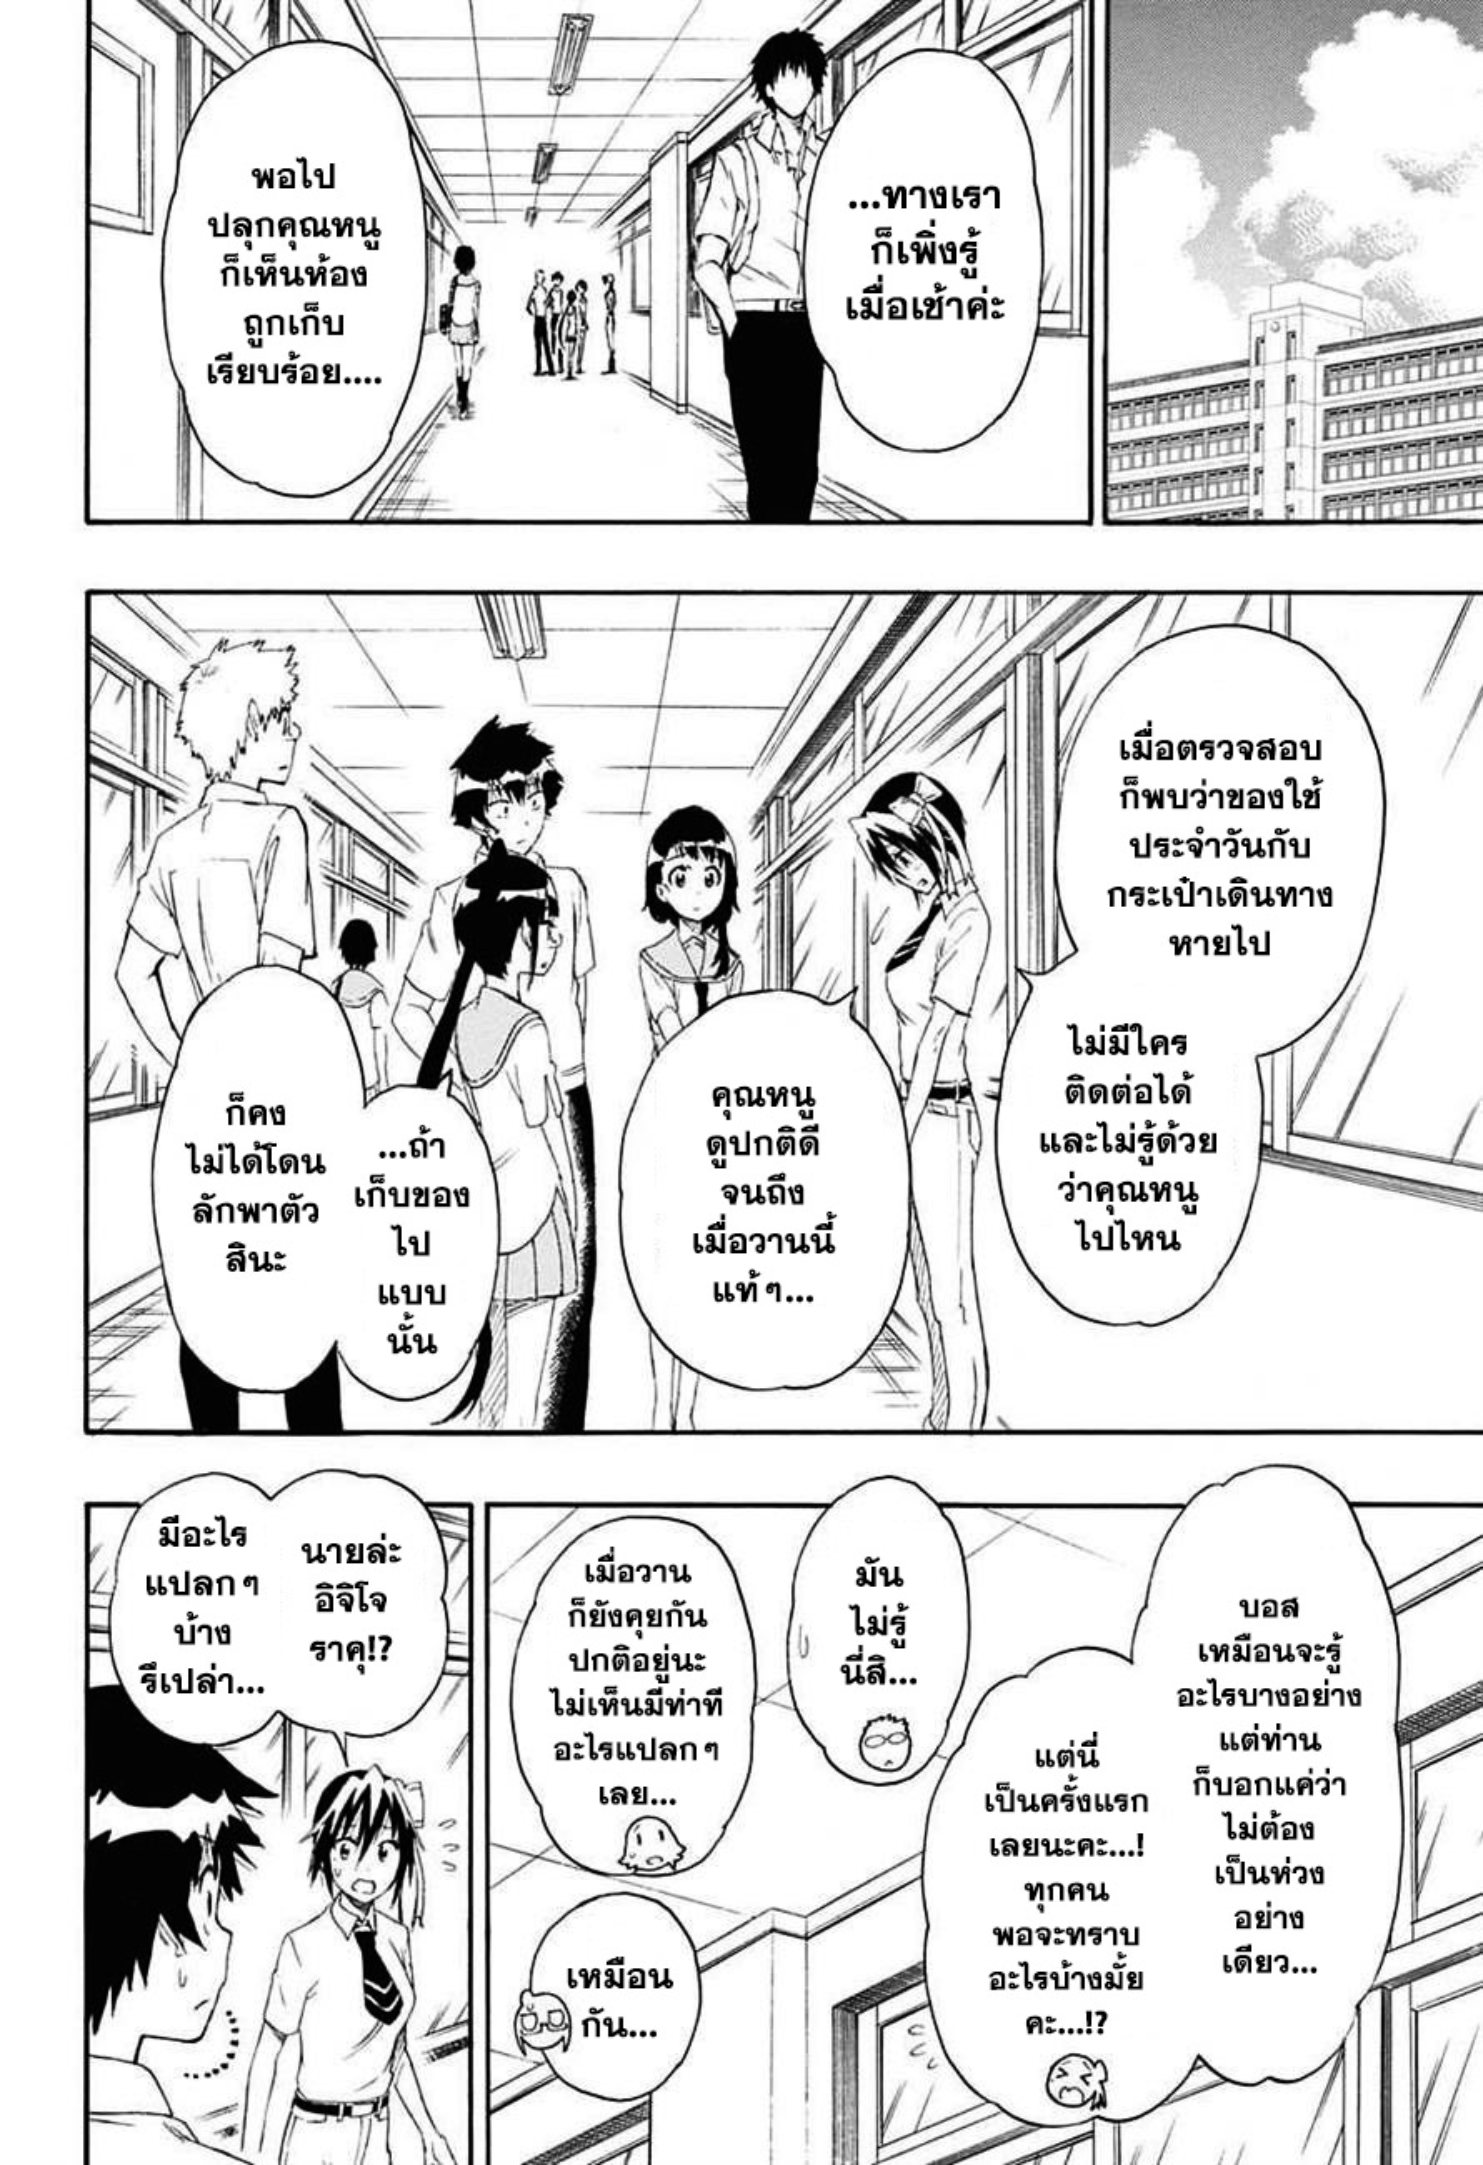 Nisekoi ตอนที่ 213 Romance Manga อ่านการ์ตูนโรแมนซ์ มังงะรักโรแมนติก แปลไทย 0424